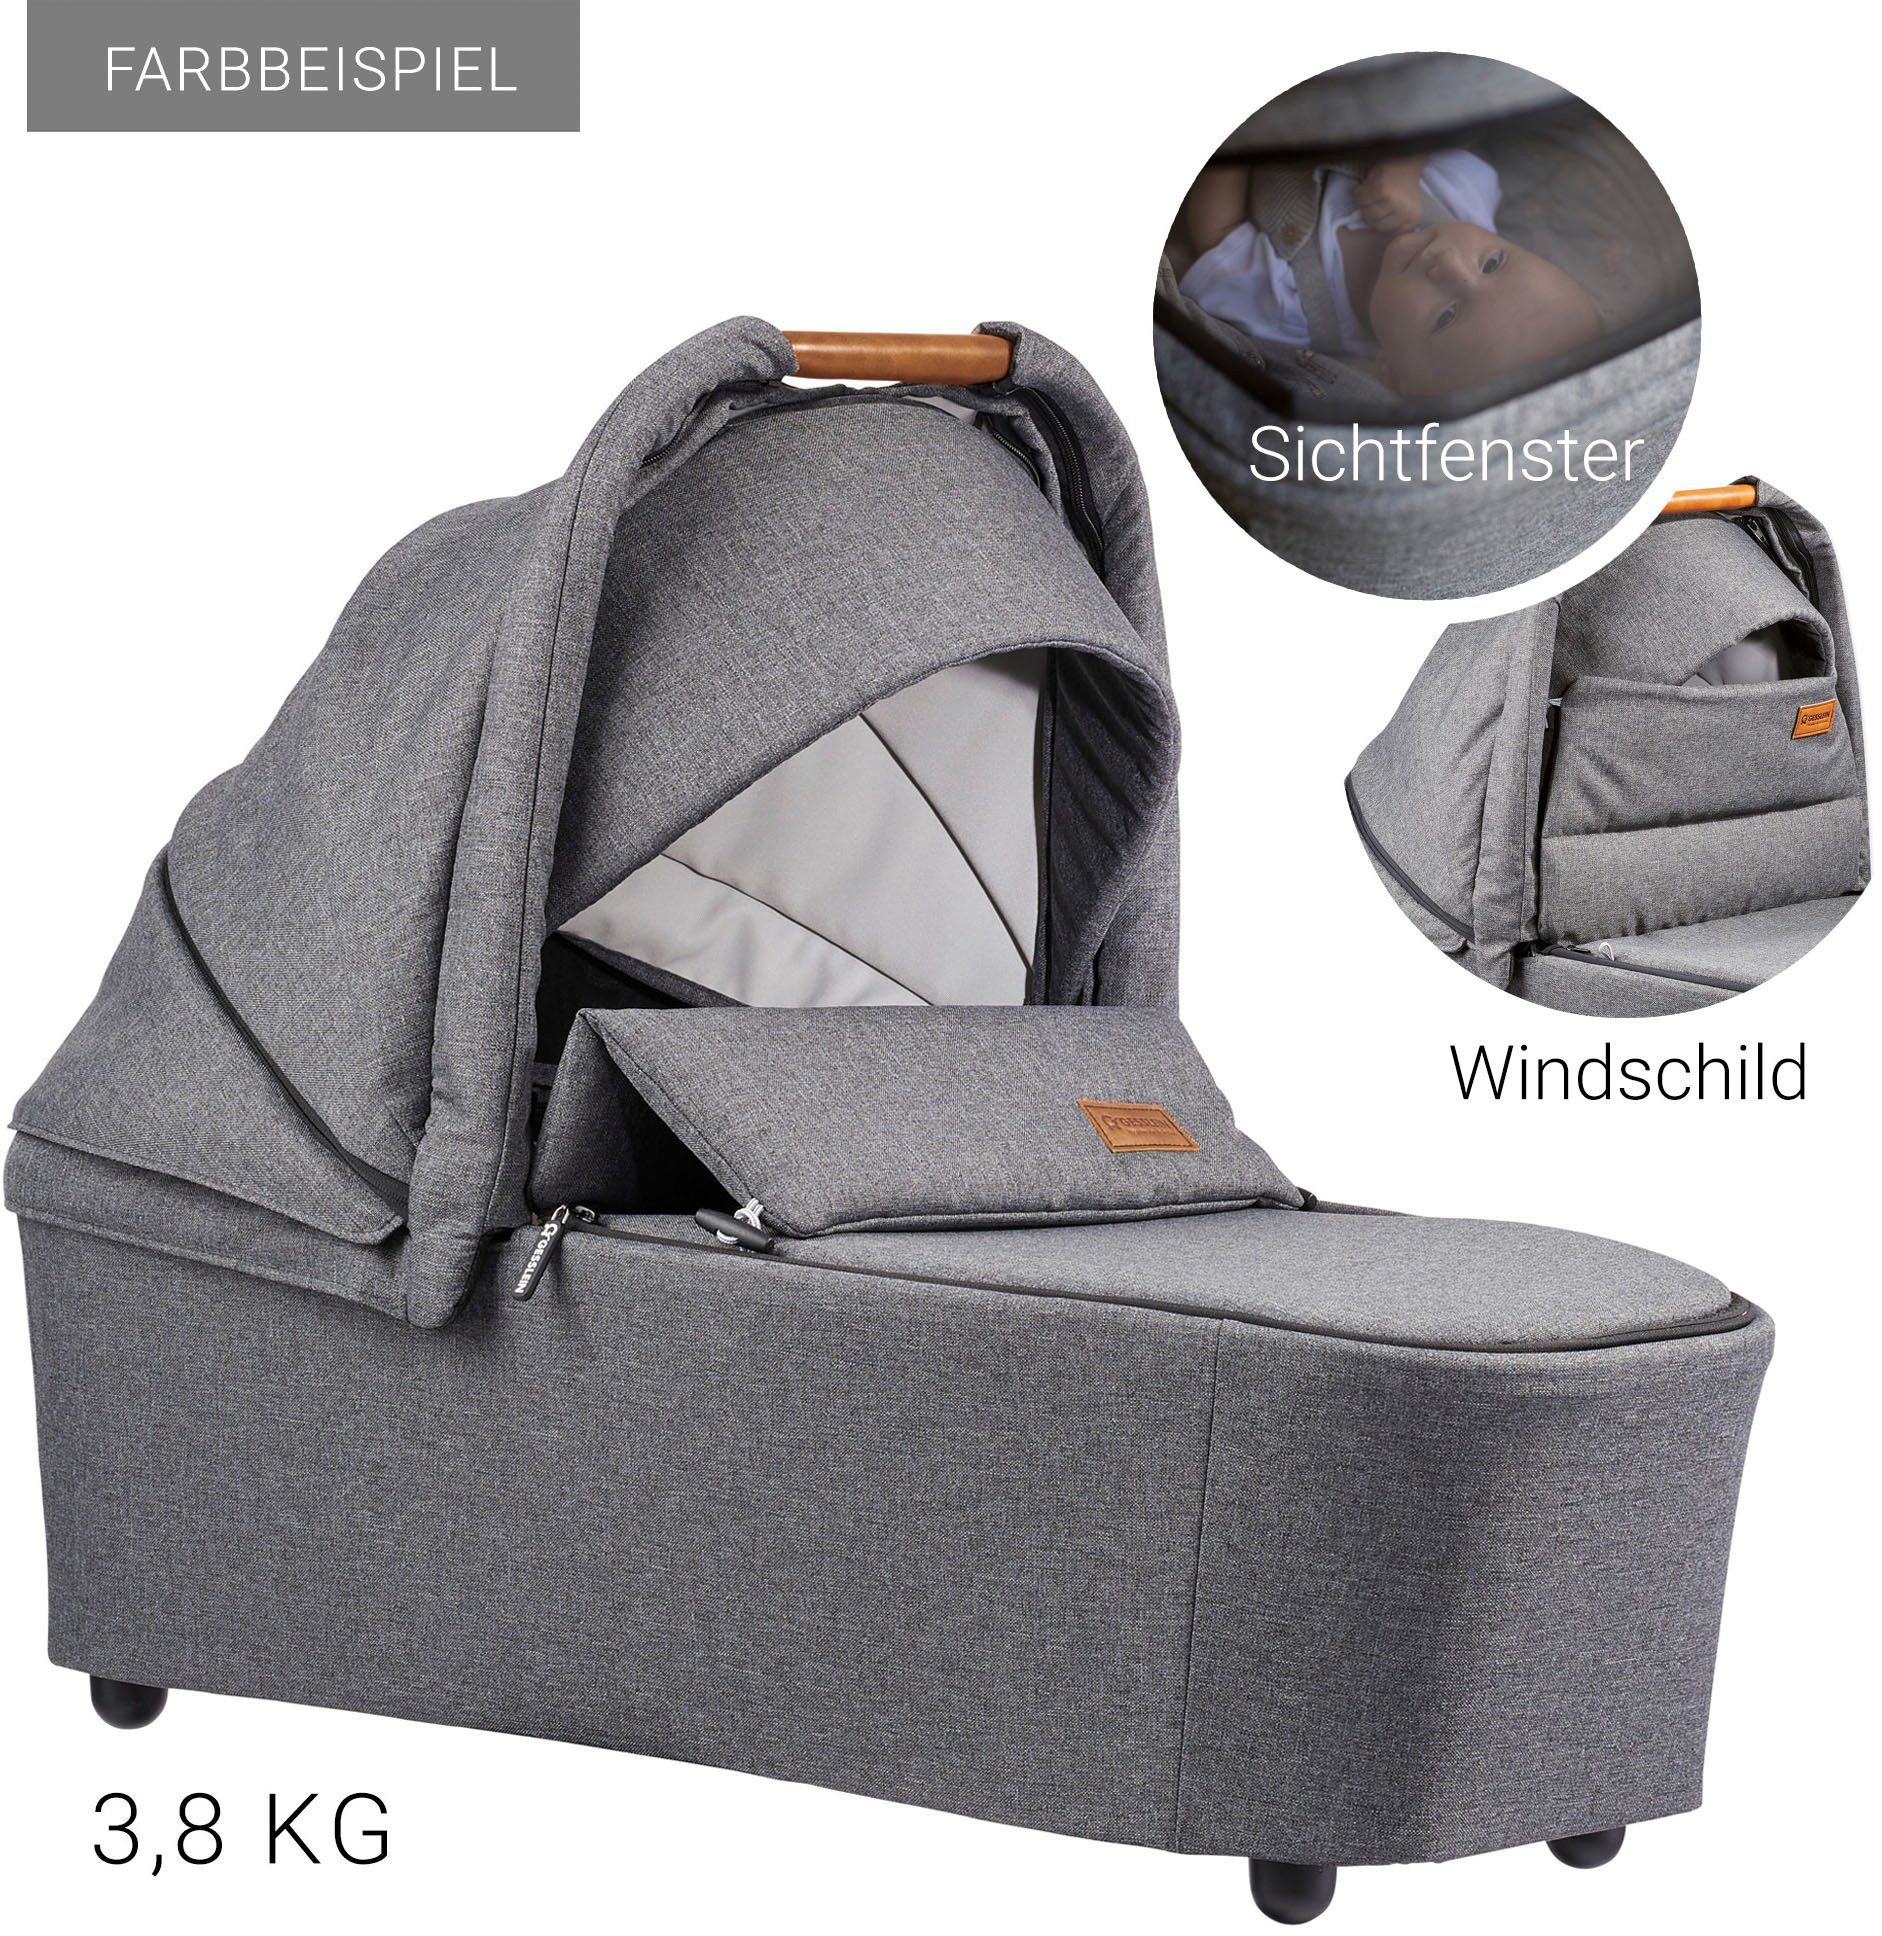 Gesslein Kombi-Kinderwagen FX4 Soft+ mit mit Babywanne mintgrün meliert, C3 schwarz, Aufsatz und Babyschalenadapter Swing